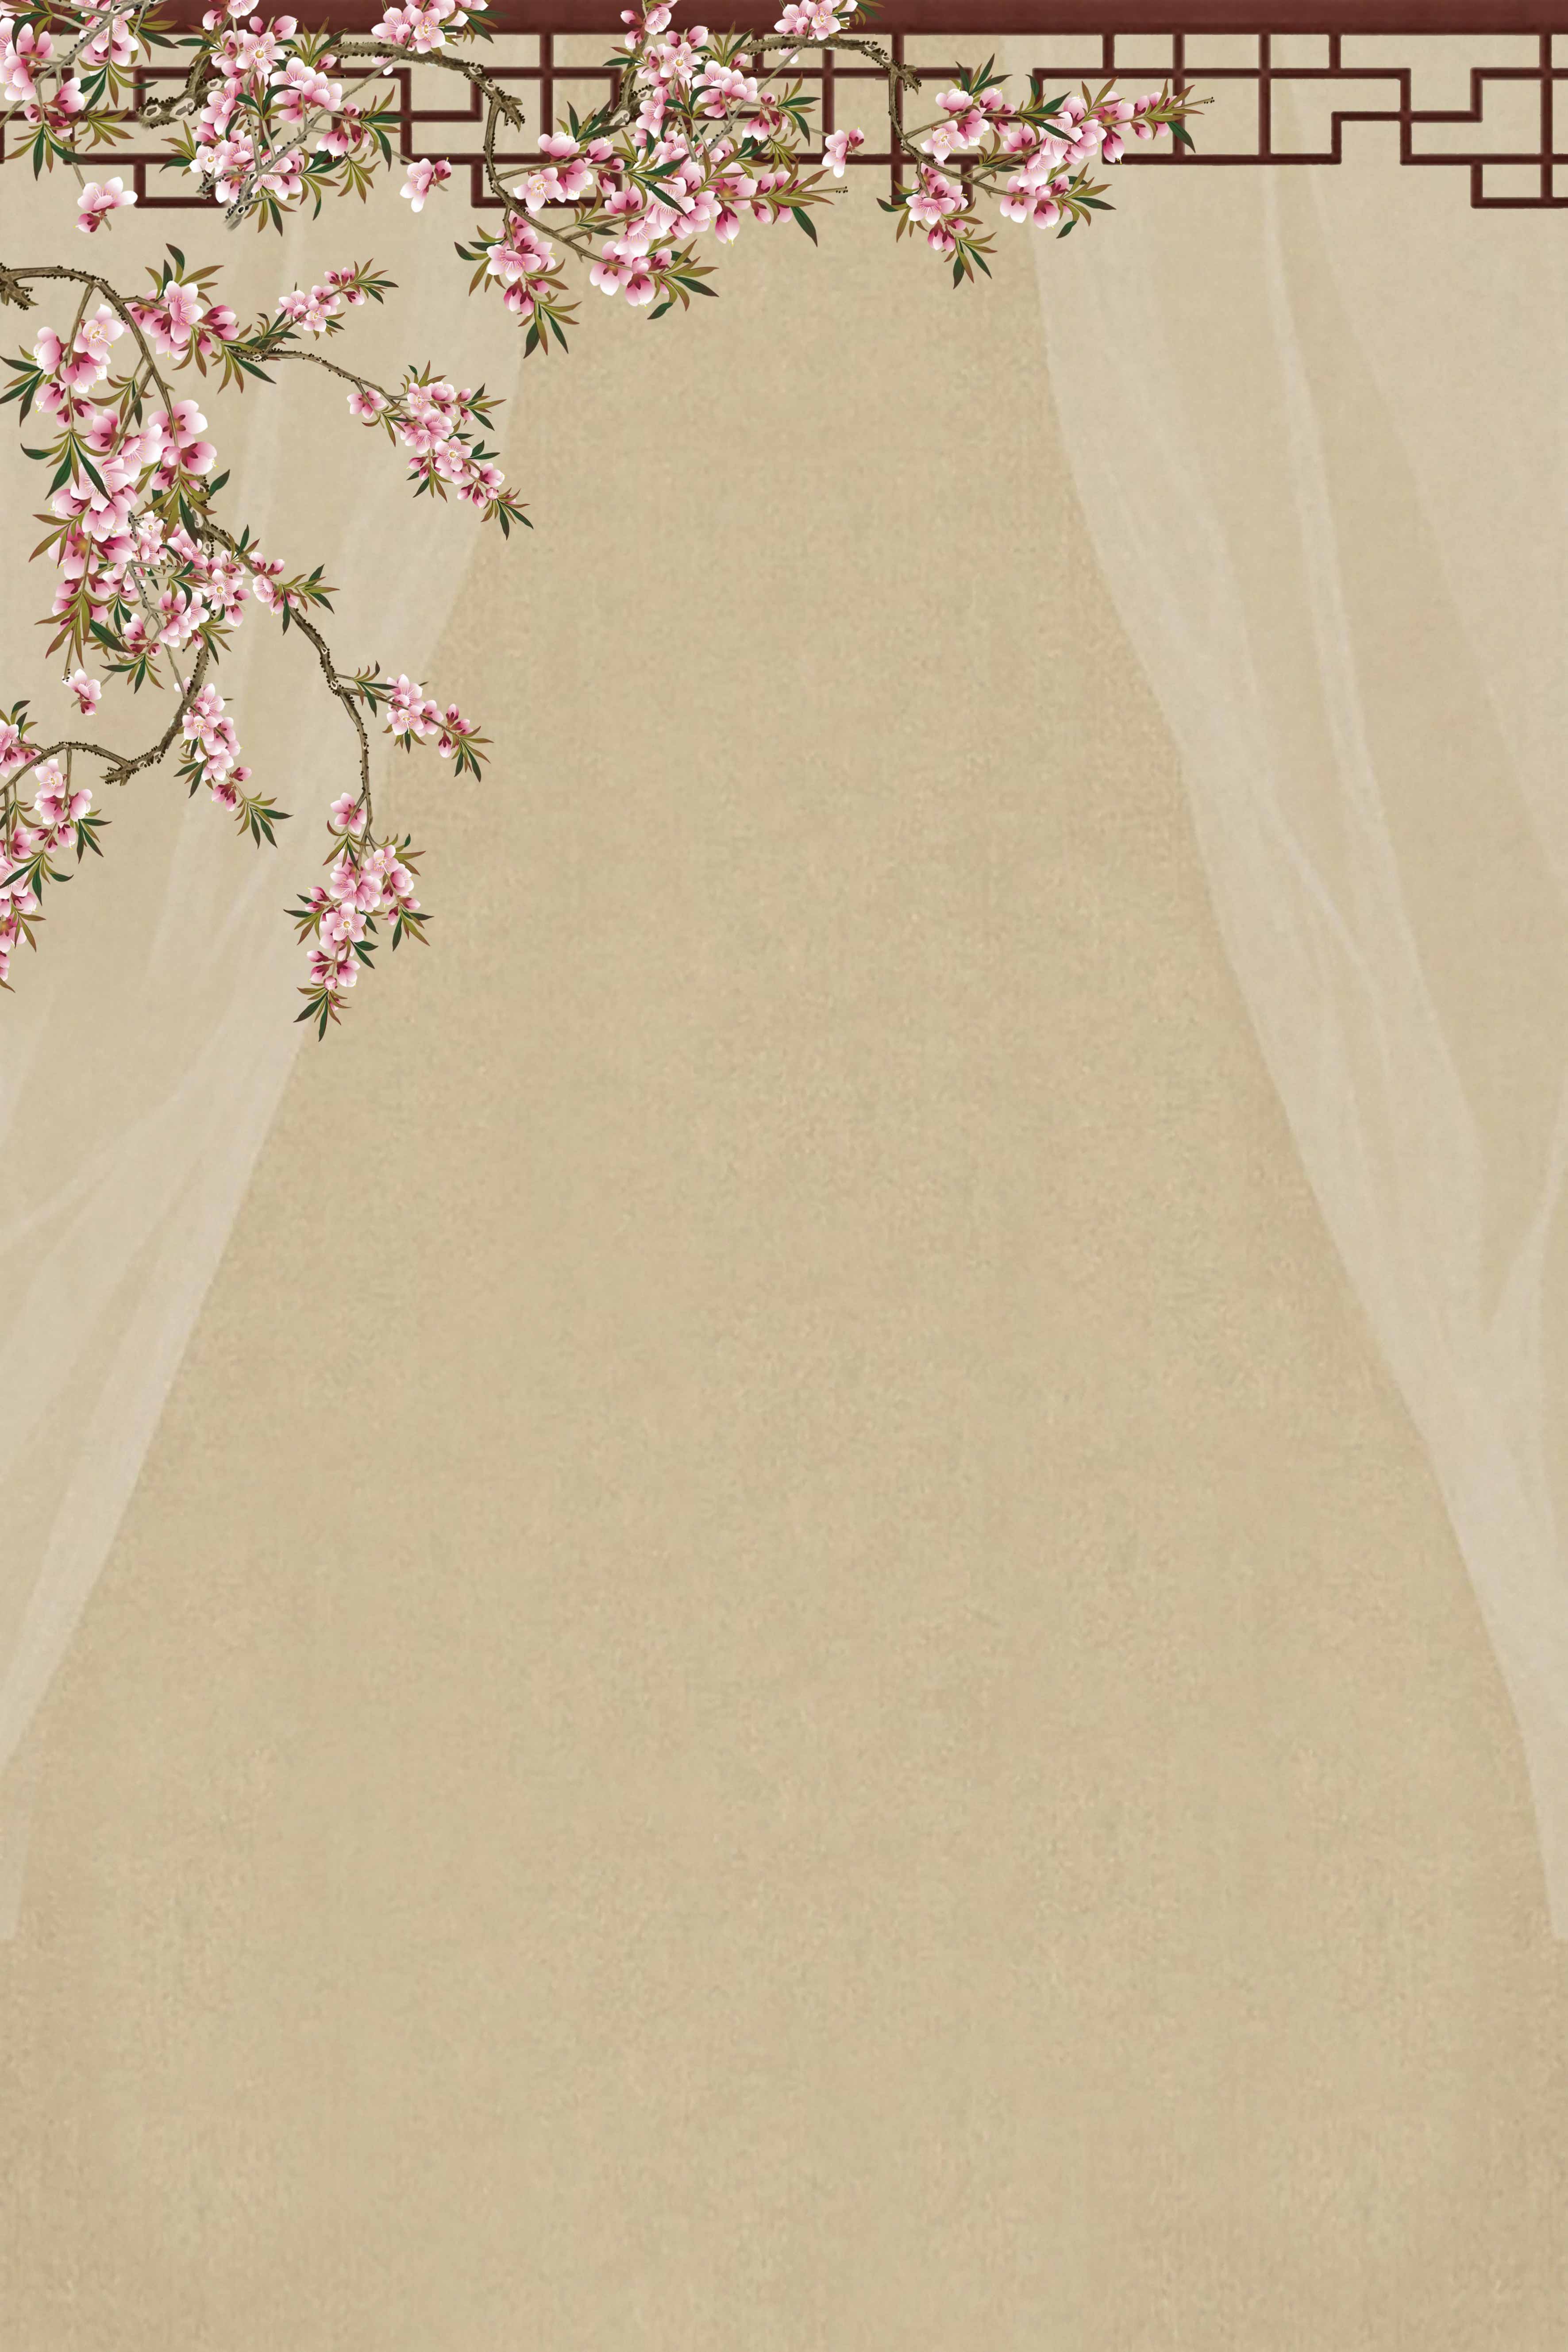 个人艺术照背景布民国风旗袍拍照道具工笔画影楼婚纱摄影极简复古中国风室内拍照背景墙图